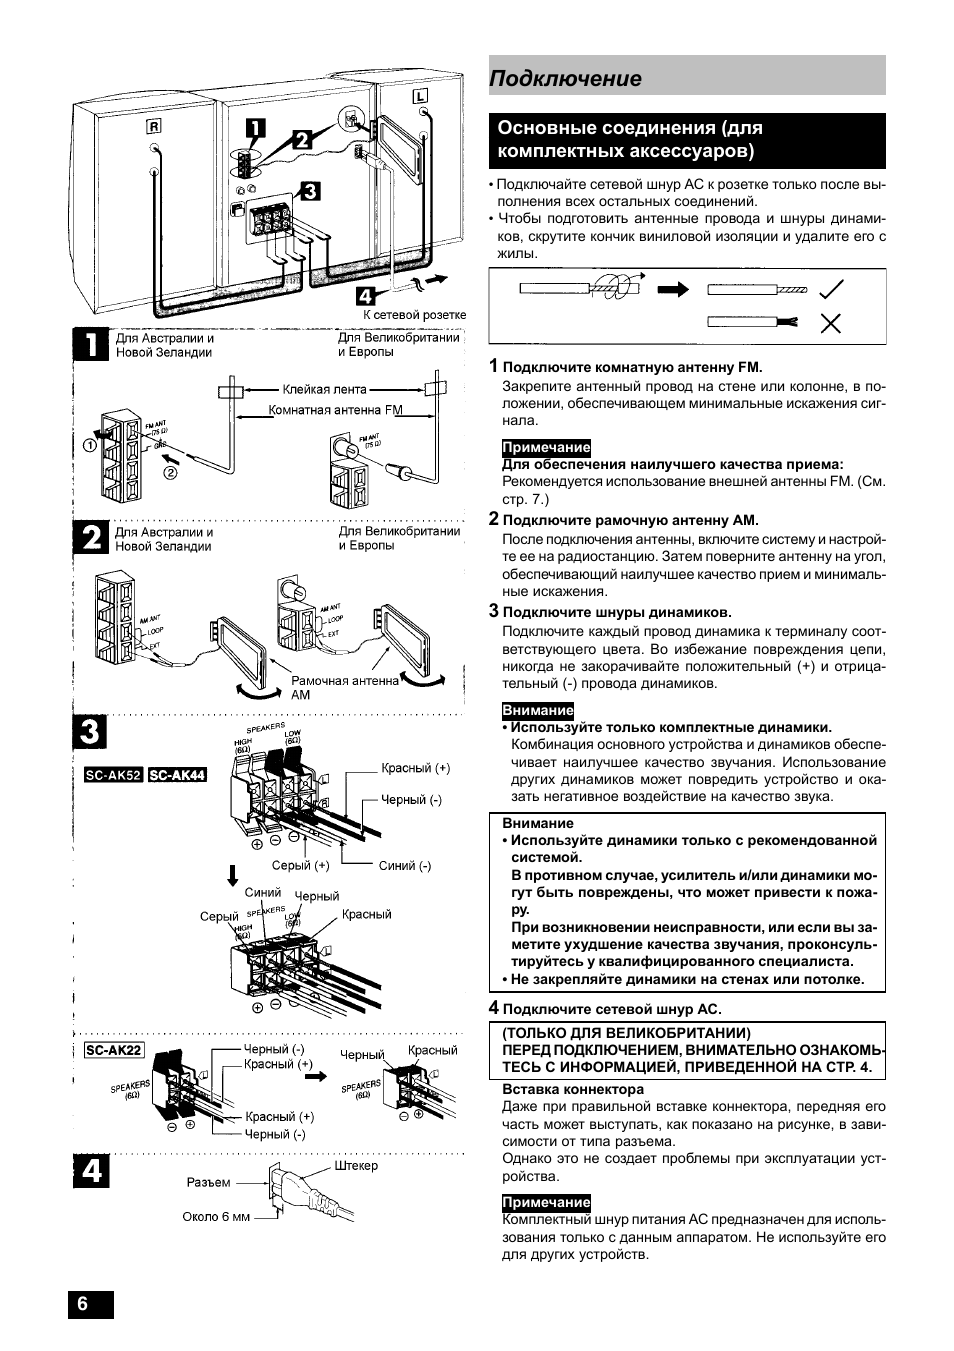 Основные соединения (для комплектных аксессуаров), Подключение | Инструкция по эксплуатации Panasonic SC-AK22 | Страница 6 / 32